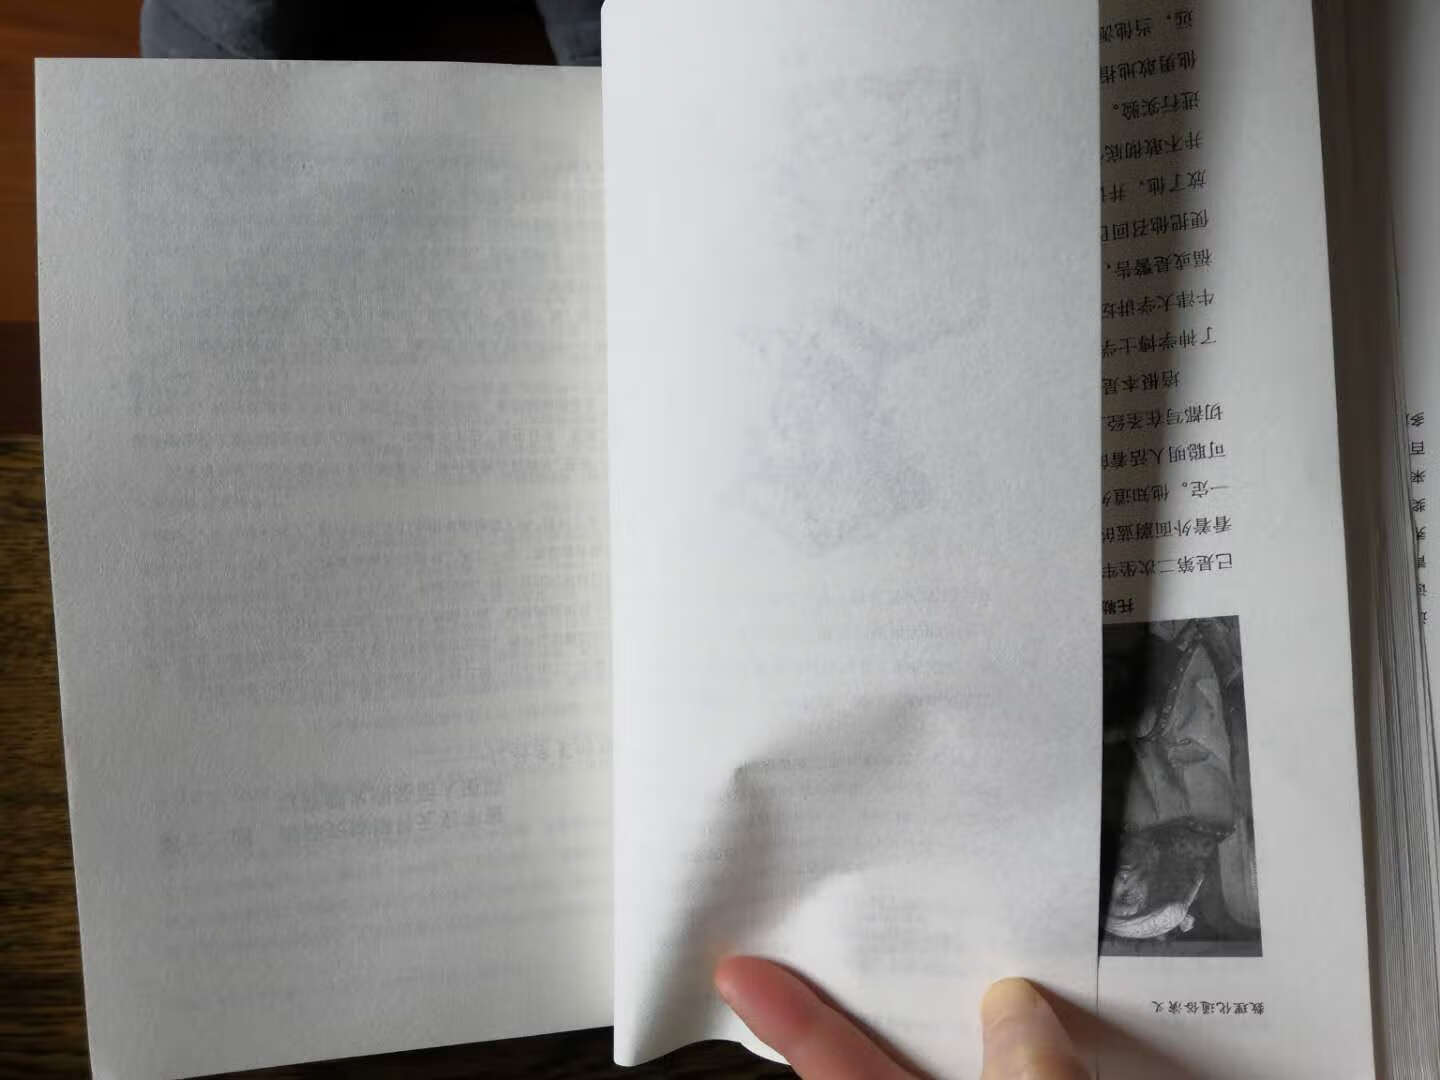 買的正品書，翻到后面都是白頁，數數一共有16頁是白頁，這樣的書如何看？